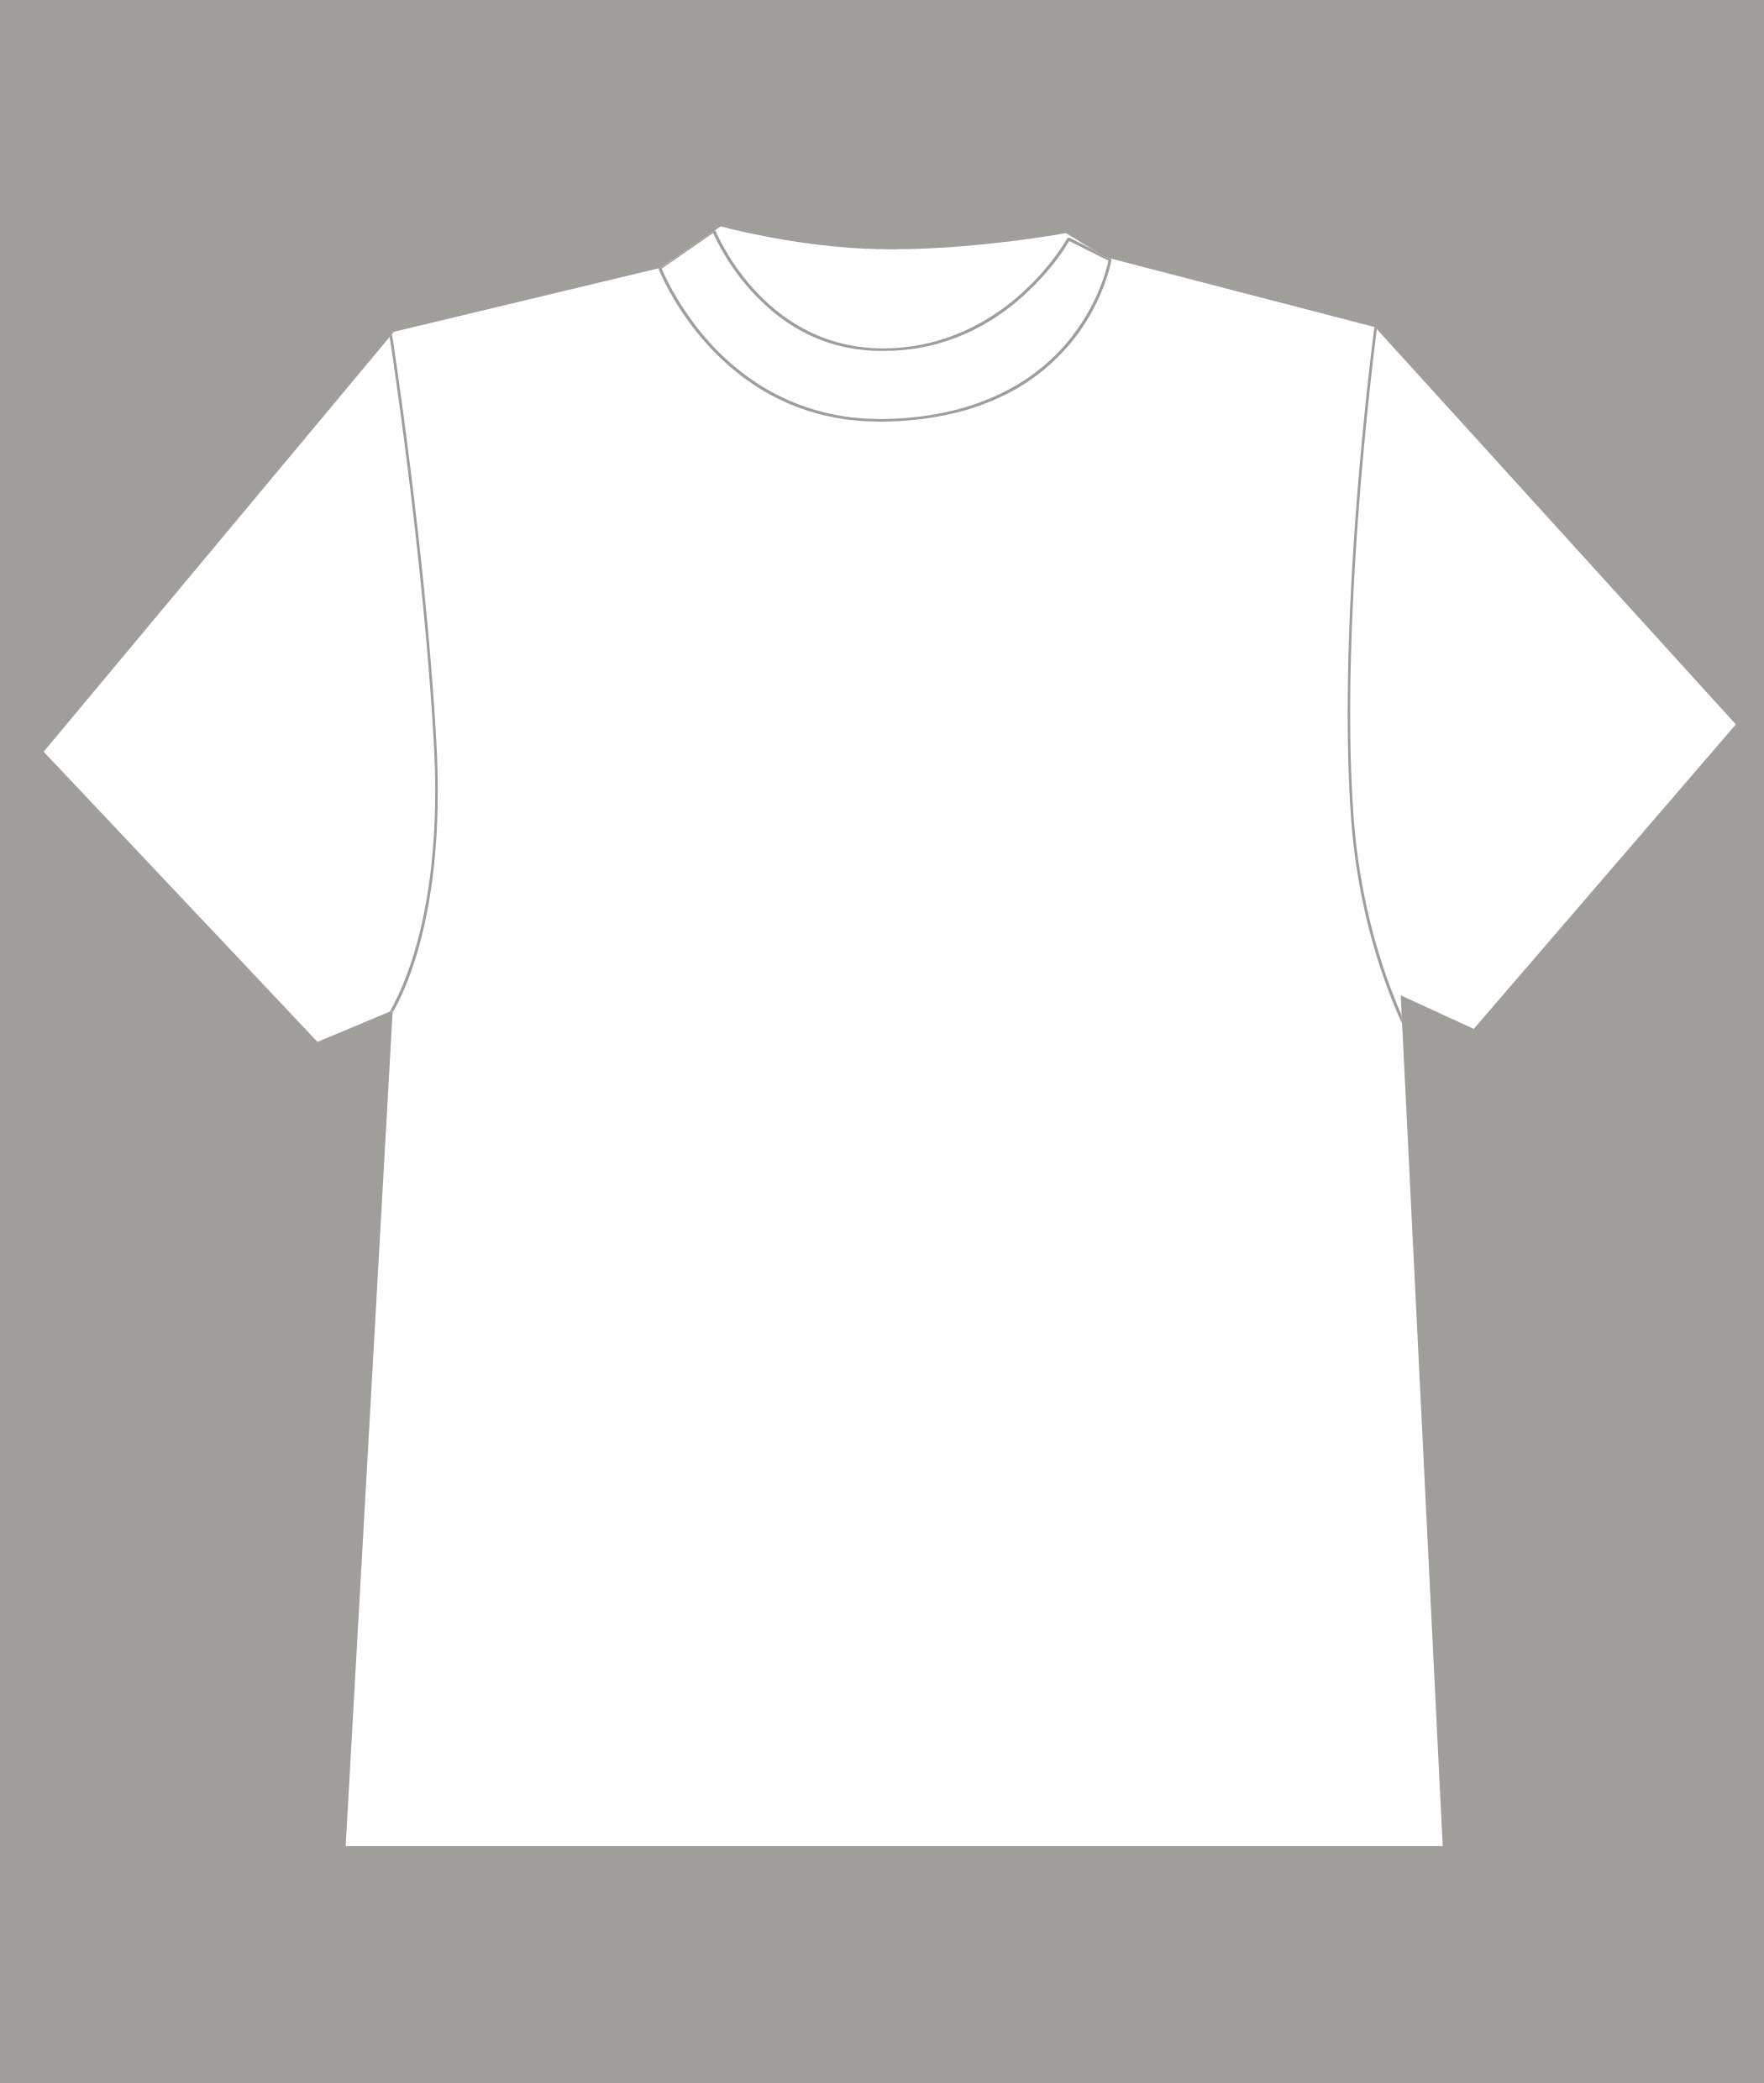 空白t恤模板 可以涂鸦制作文化衫的模板图纸